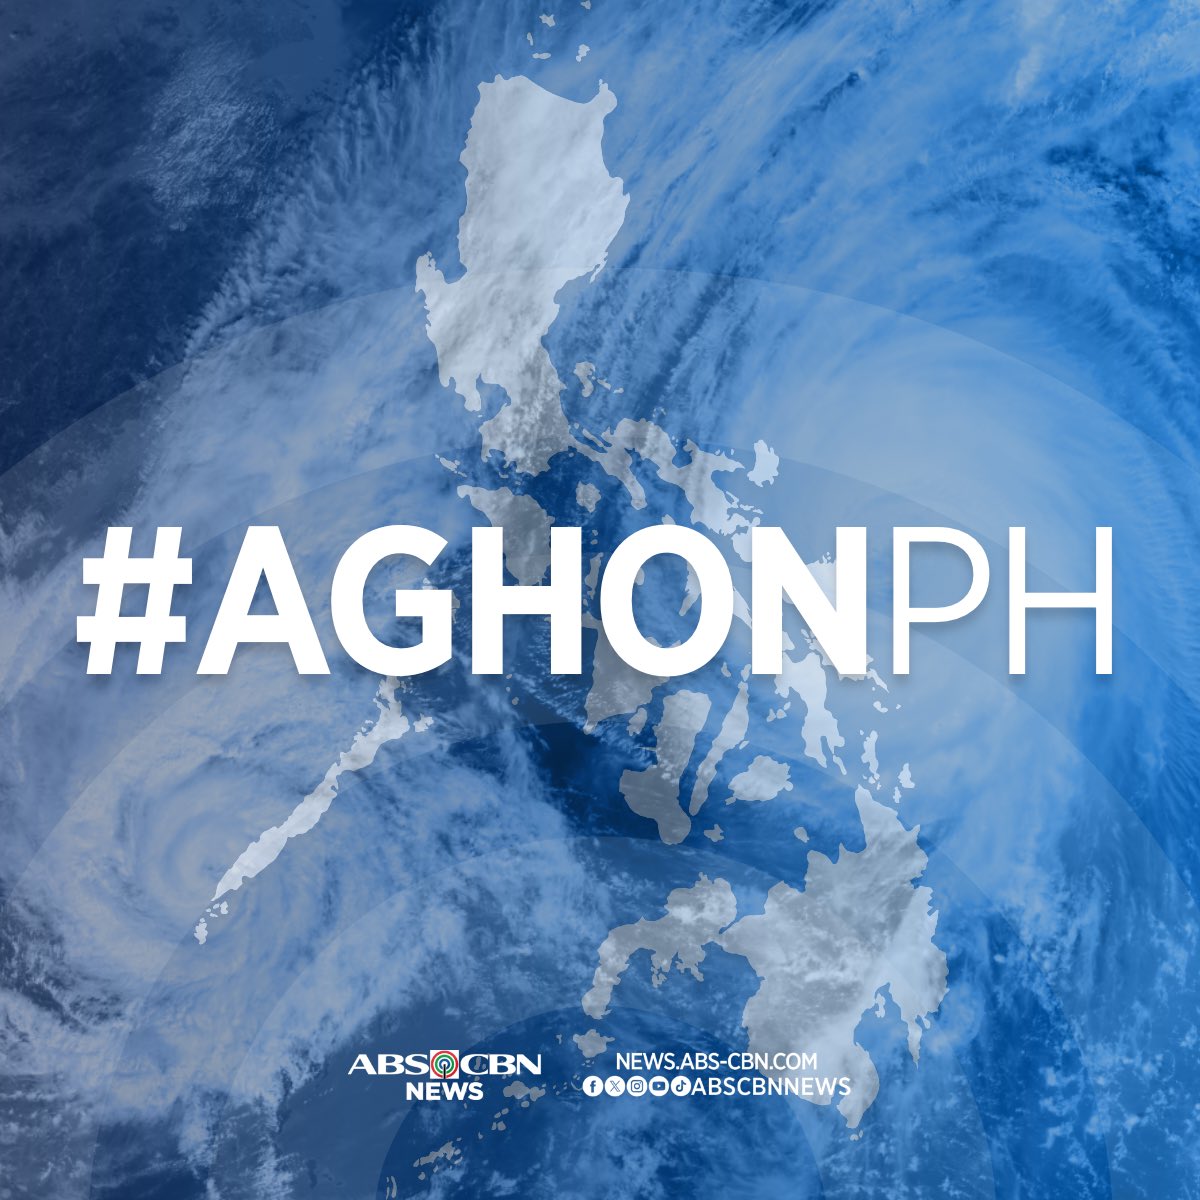 JUST IN: Lumakas na bilang tropical depression 'Aghon' ang low pressure area sa Surigao, ayon sa inilabas na tropical cyclone bulletin ng PAGASA Biyernes, alas-5 umaga. 

Para sa iba pang ulat, bisitahin ang news.abs-cbn.com/latest-news.